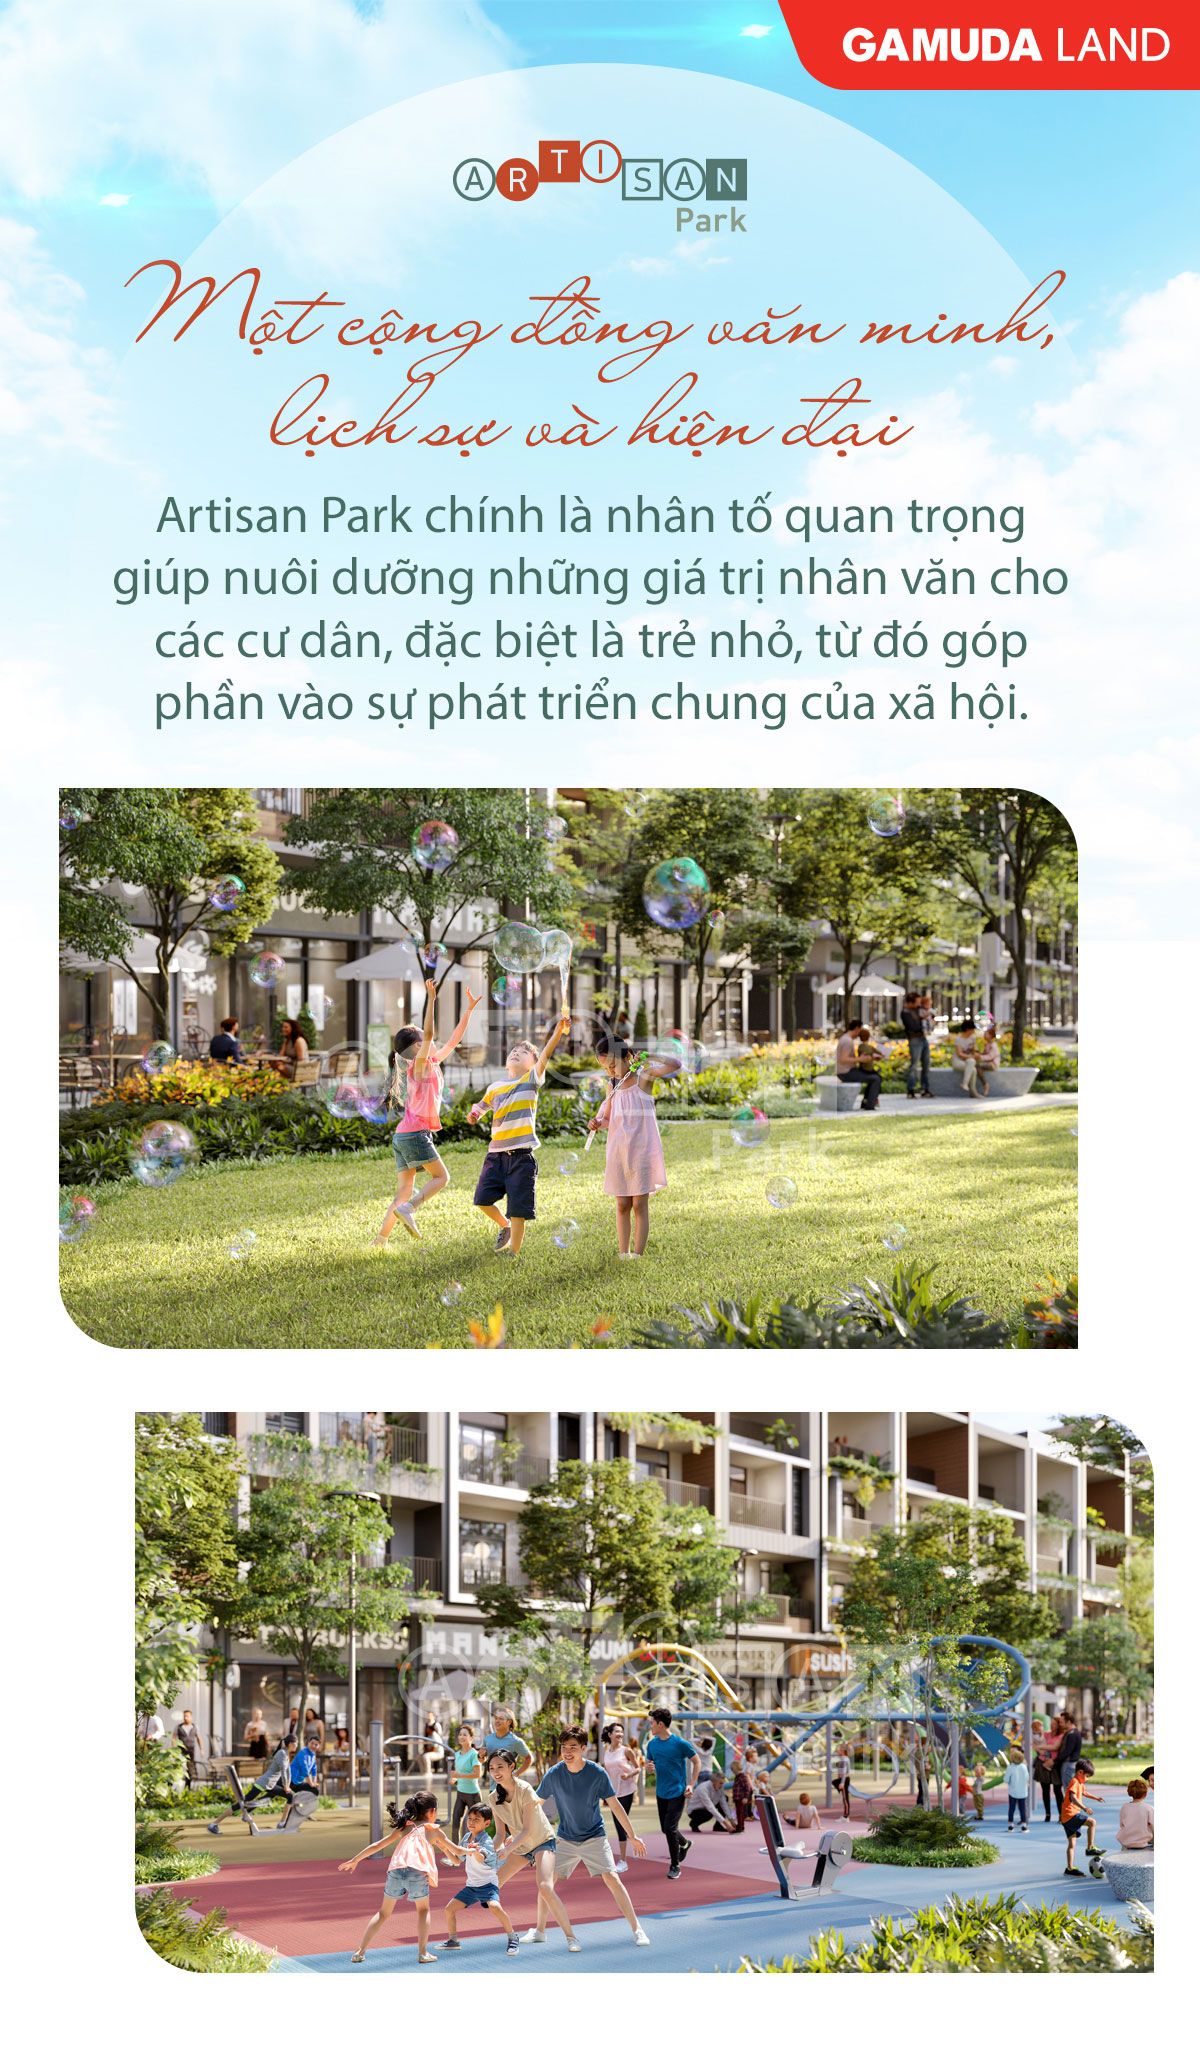 Artisan Park chính là nhân tố quan trọng giúp nuôi dưỡng những giá trị nhân văn cho các cư dân.